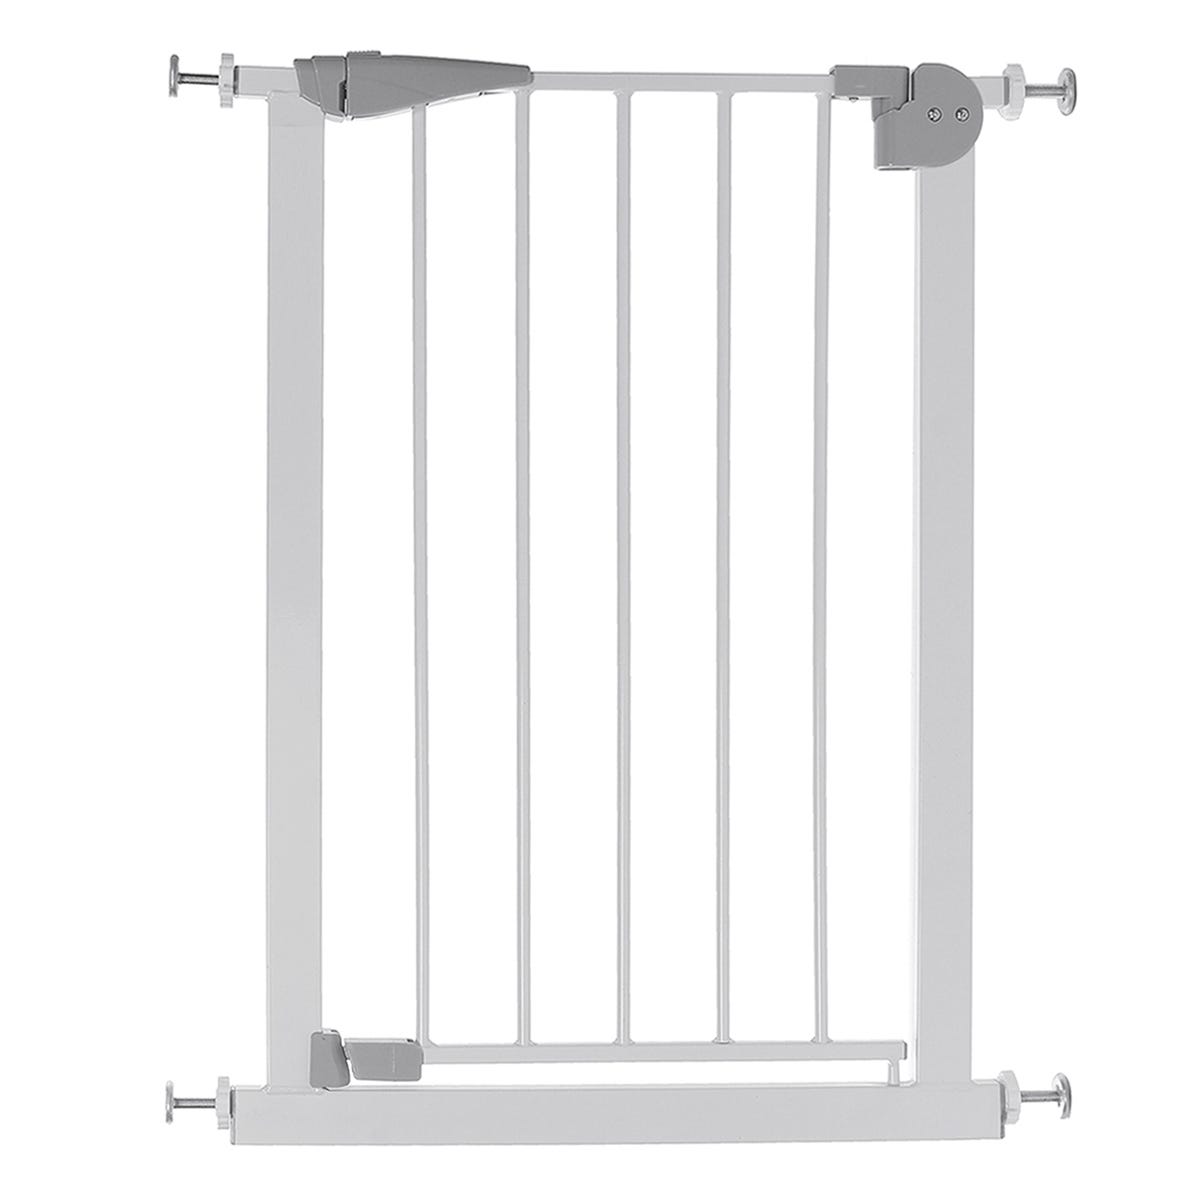 Barrière de Sécurité extensible Barrière d'escalier Fermeture facile pour  bébé chien métal H.76 x L.75 - 103 cm blanc